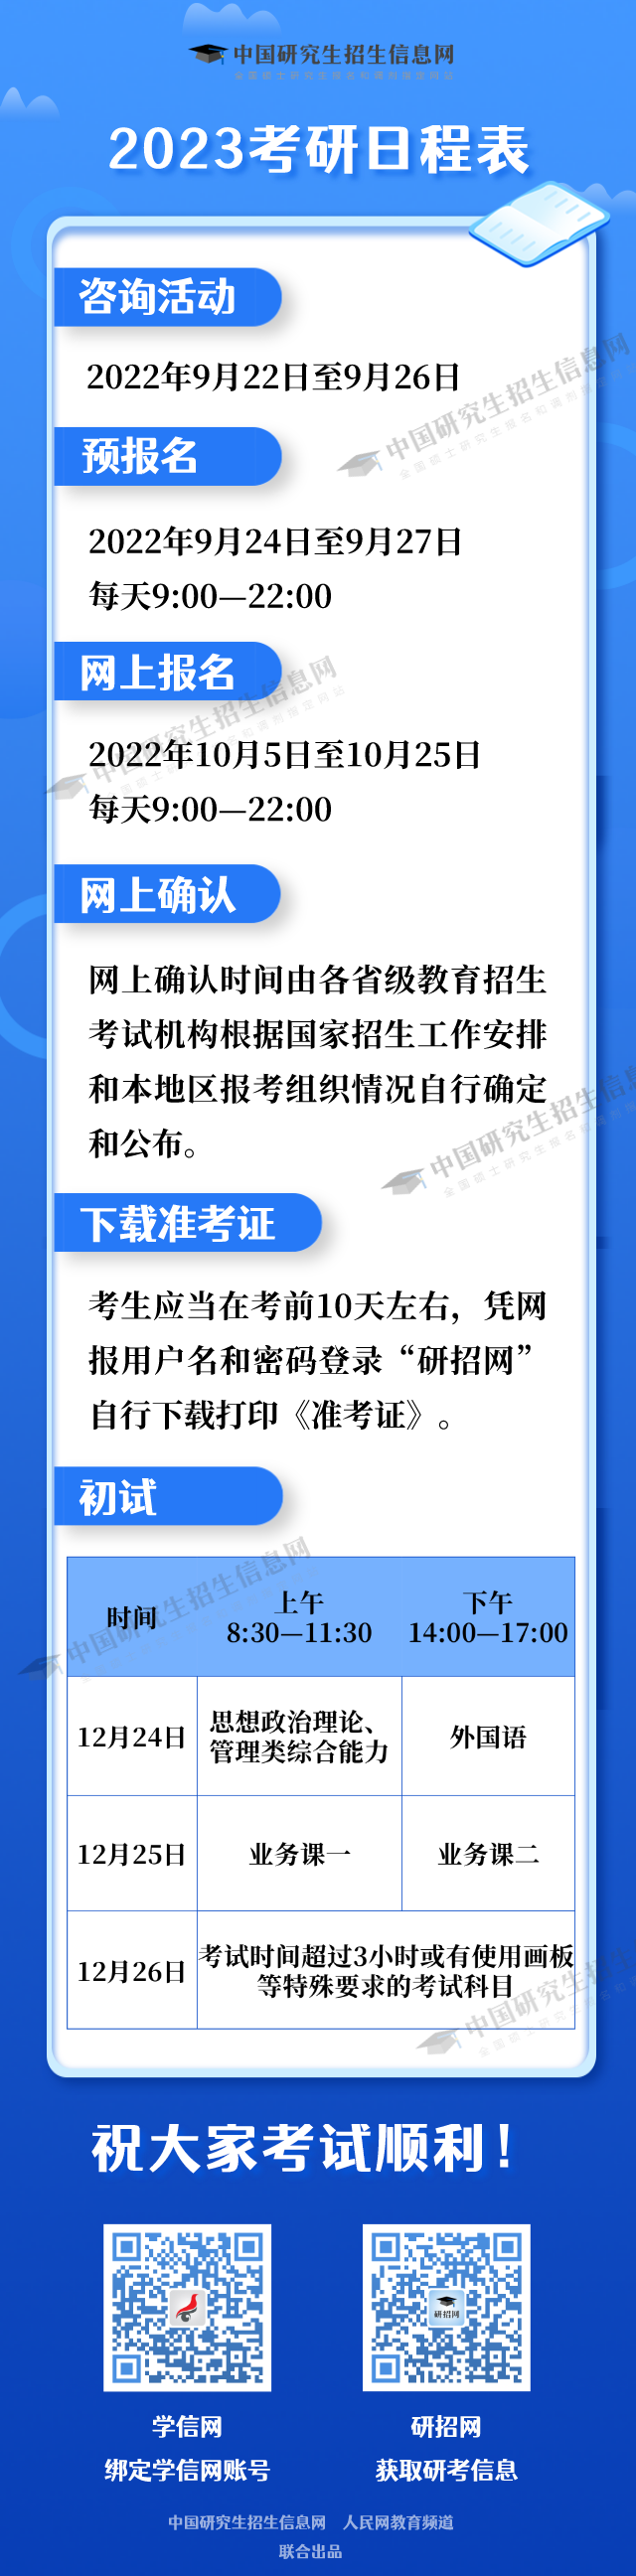 河北省2020年全国硕士研究生招生考试考生诚信考试公告